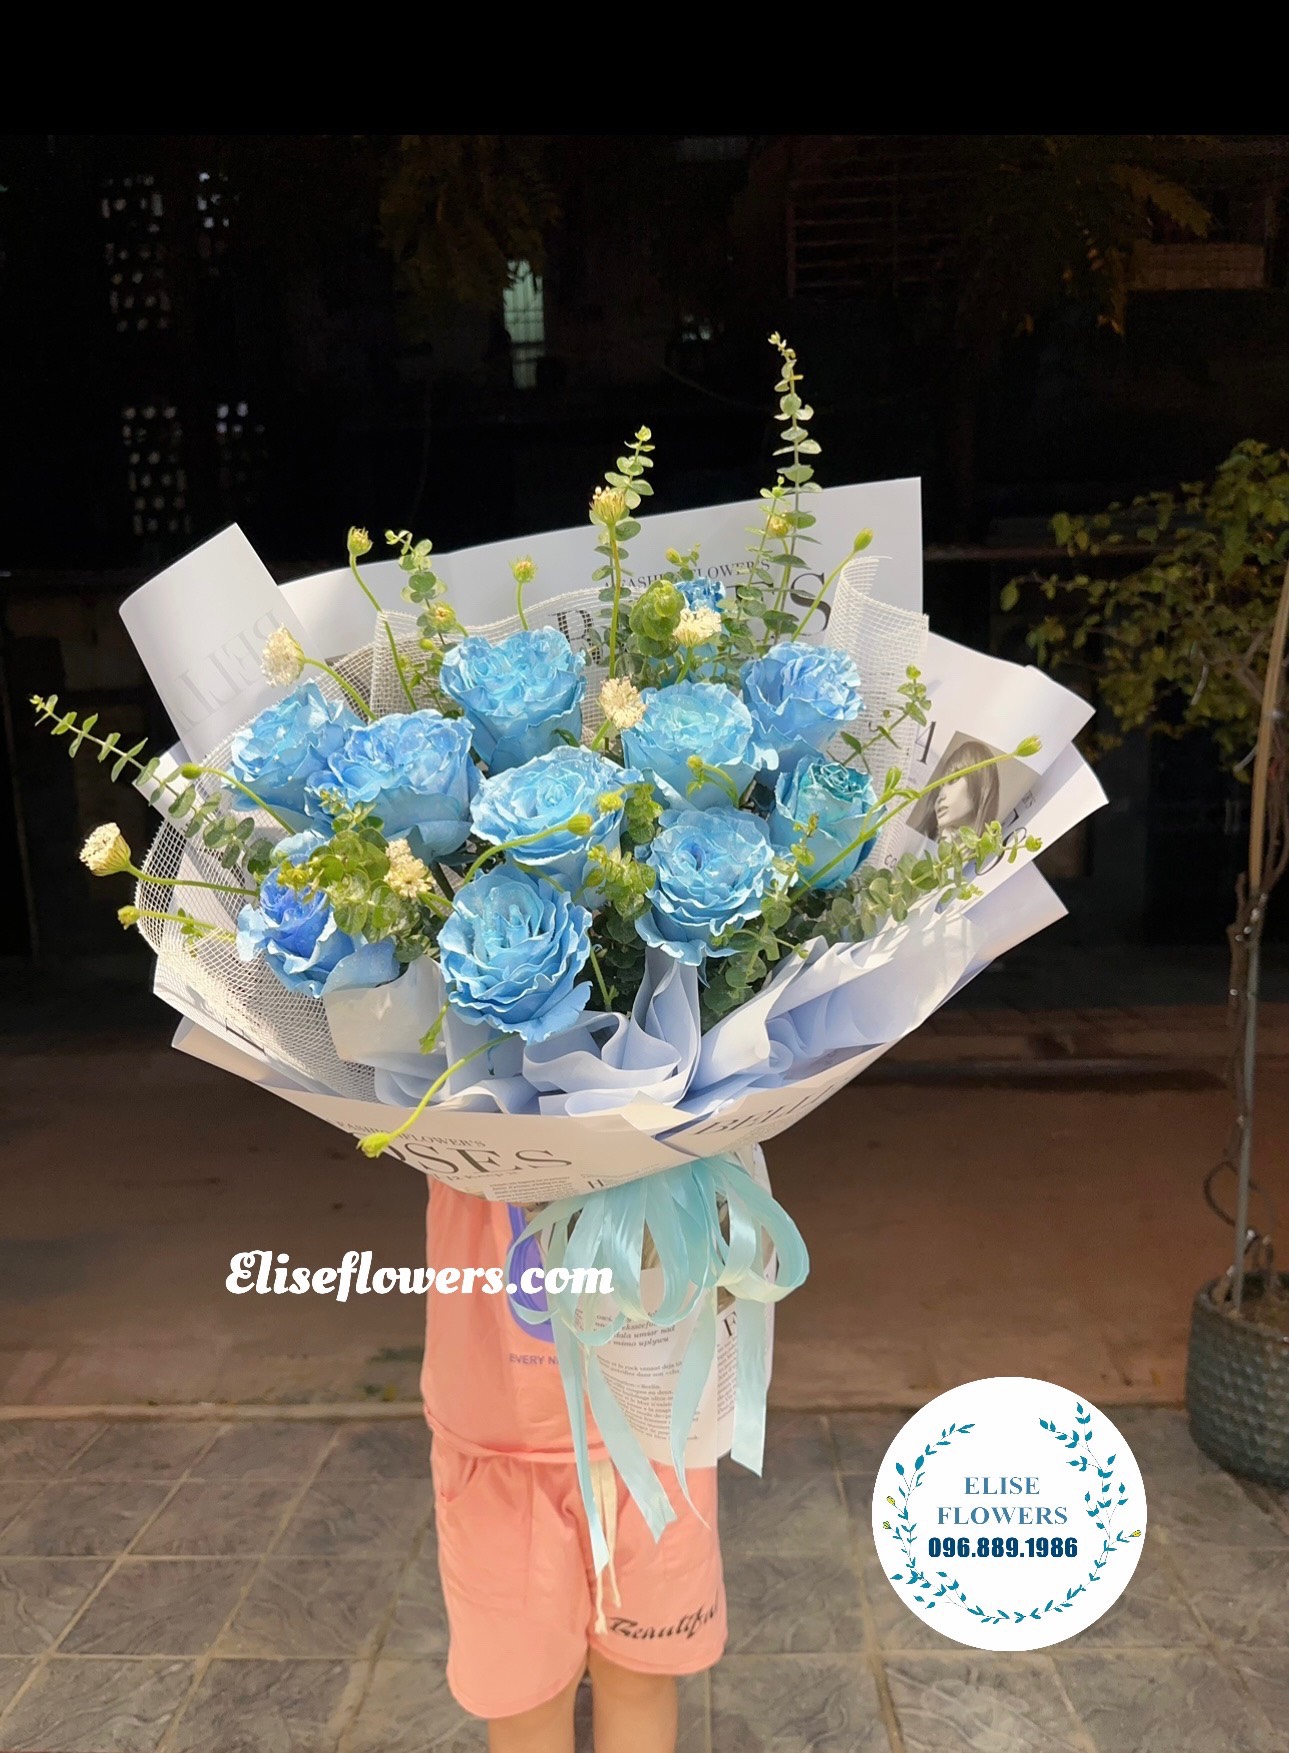 Bó hoa hồng xanh Ecuador. HOA NHẬP KHẨU HÀ NỘI. Bó hoa nhập khẩu đẹp ở Hà Nội.